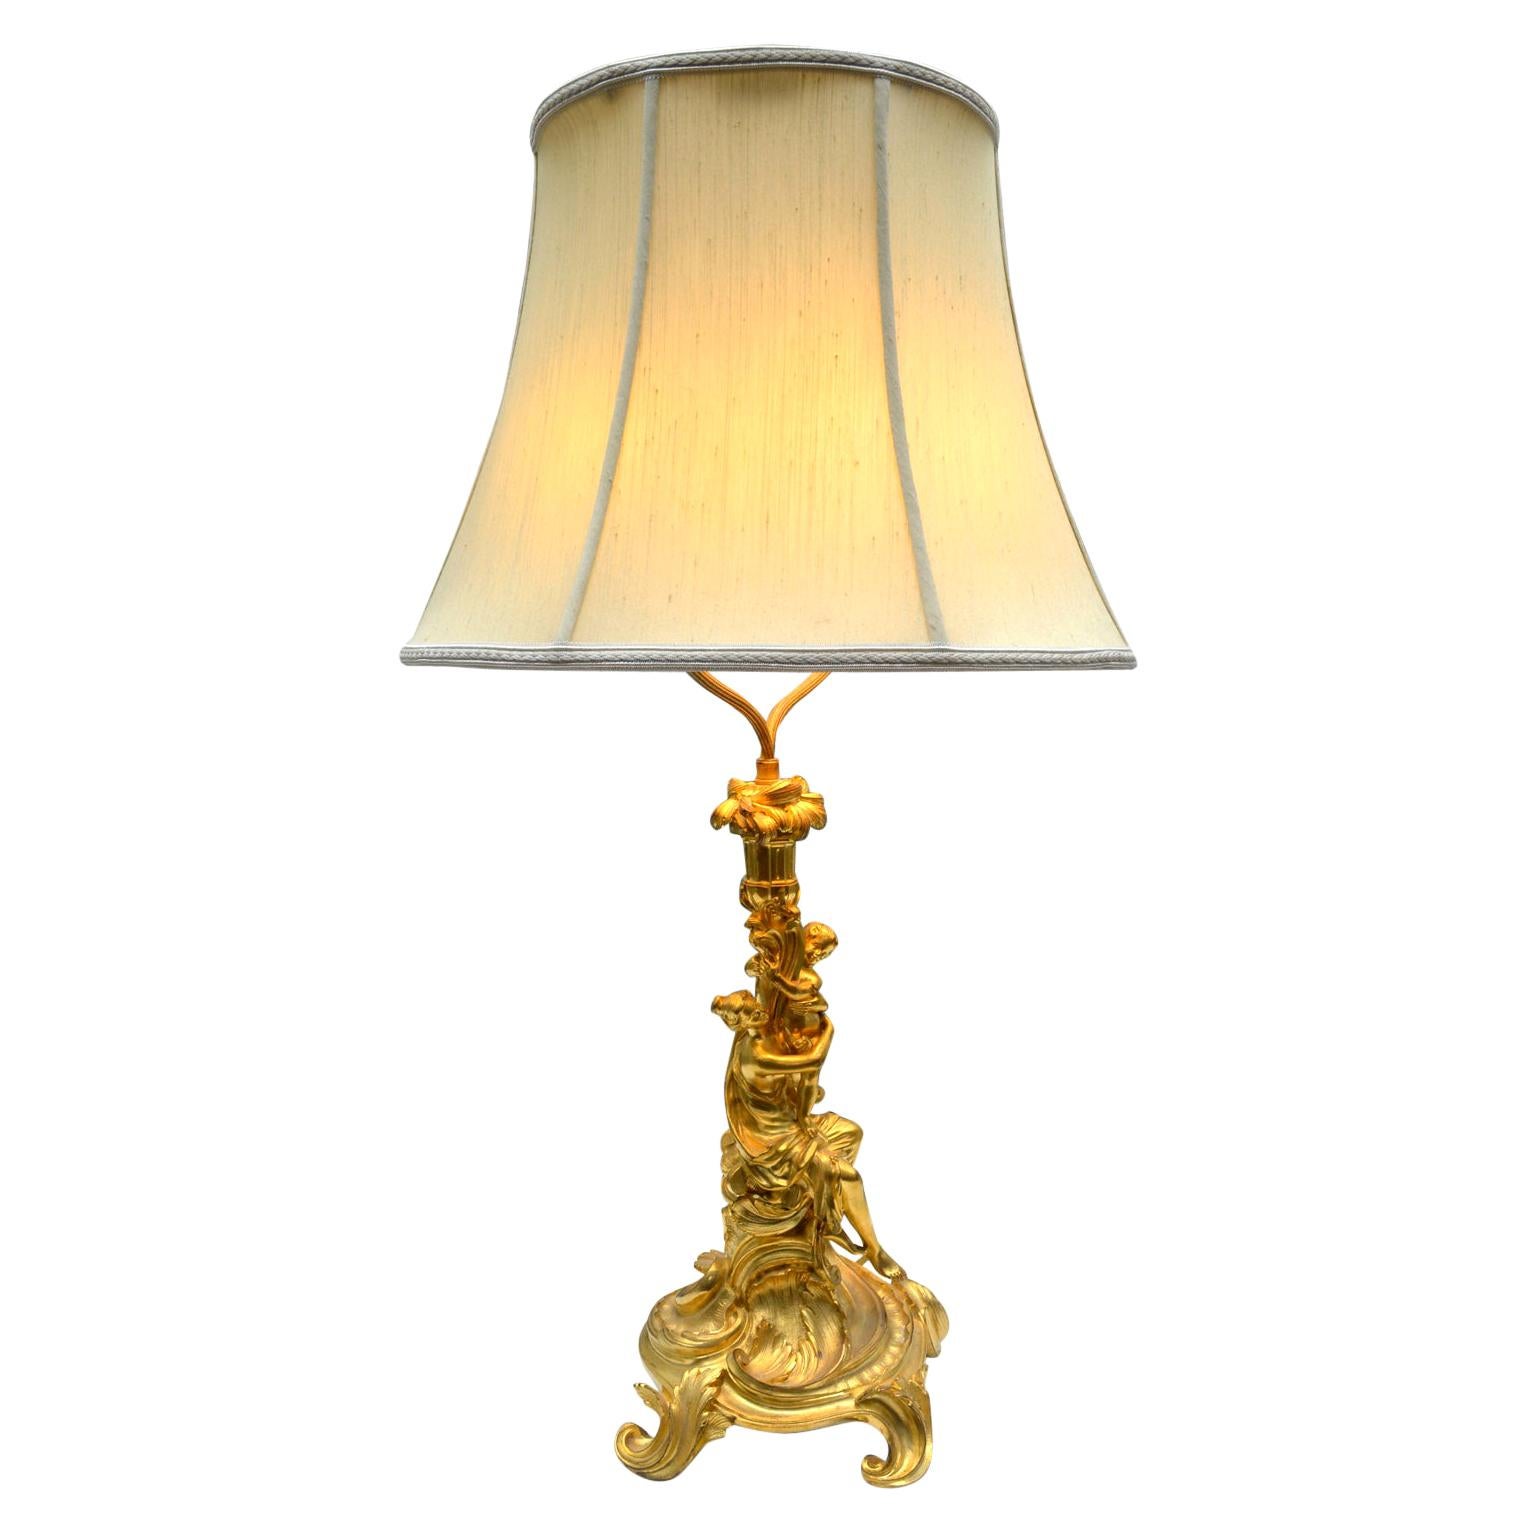 Lampe figurative de style Louis XV du 19ème siècle en bronze doré rococo